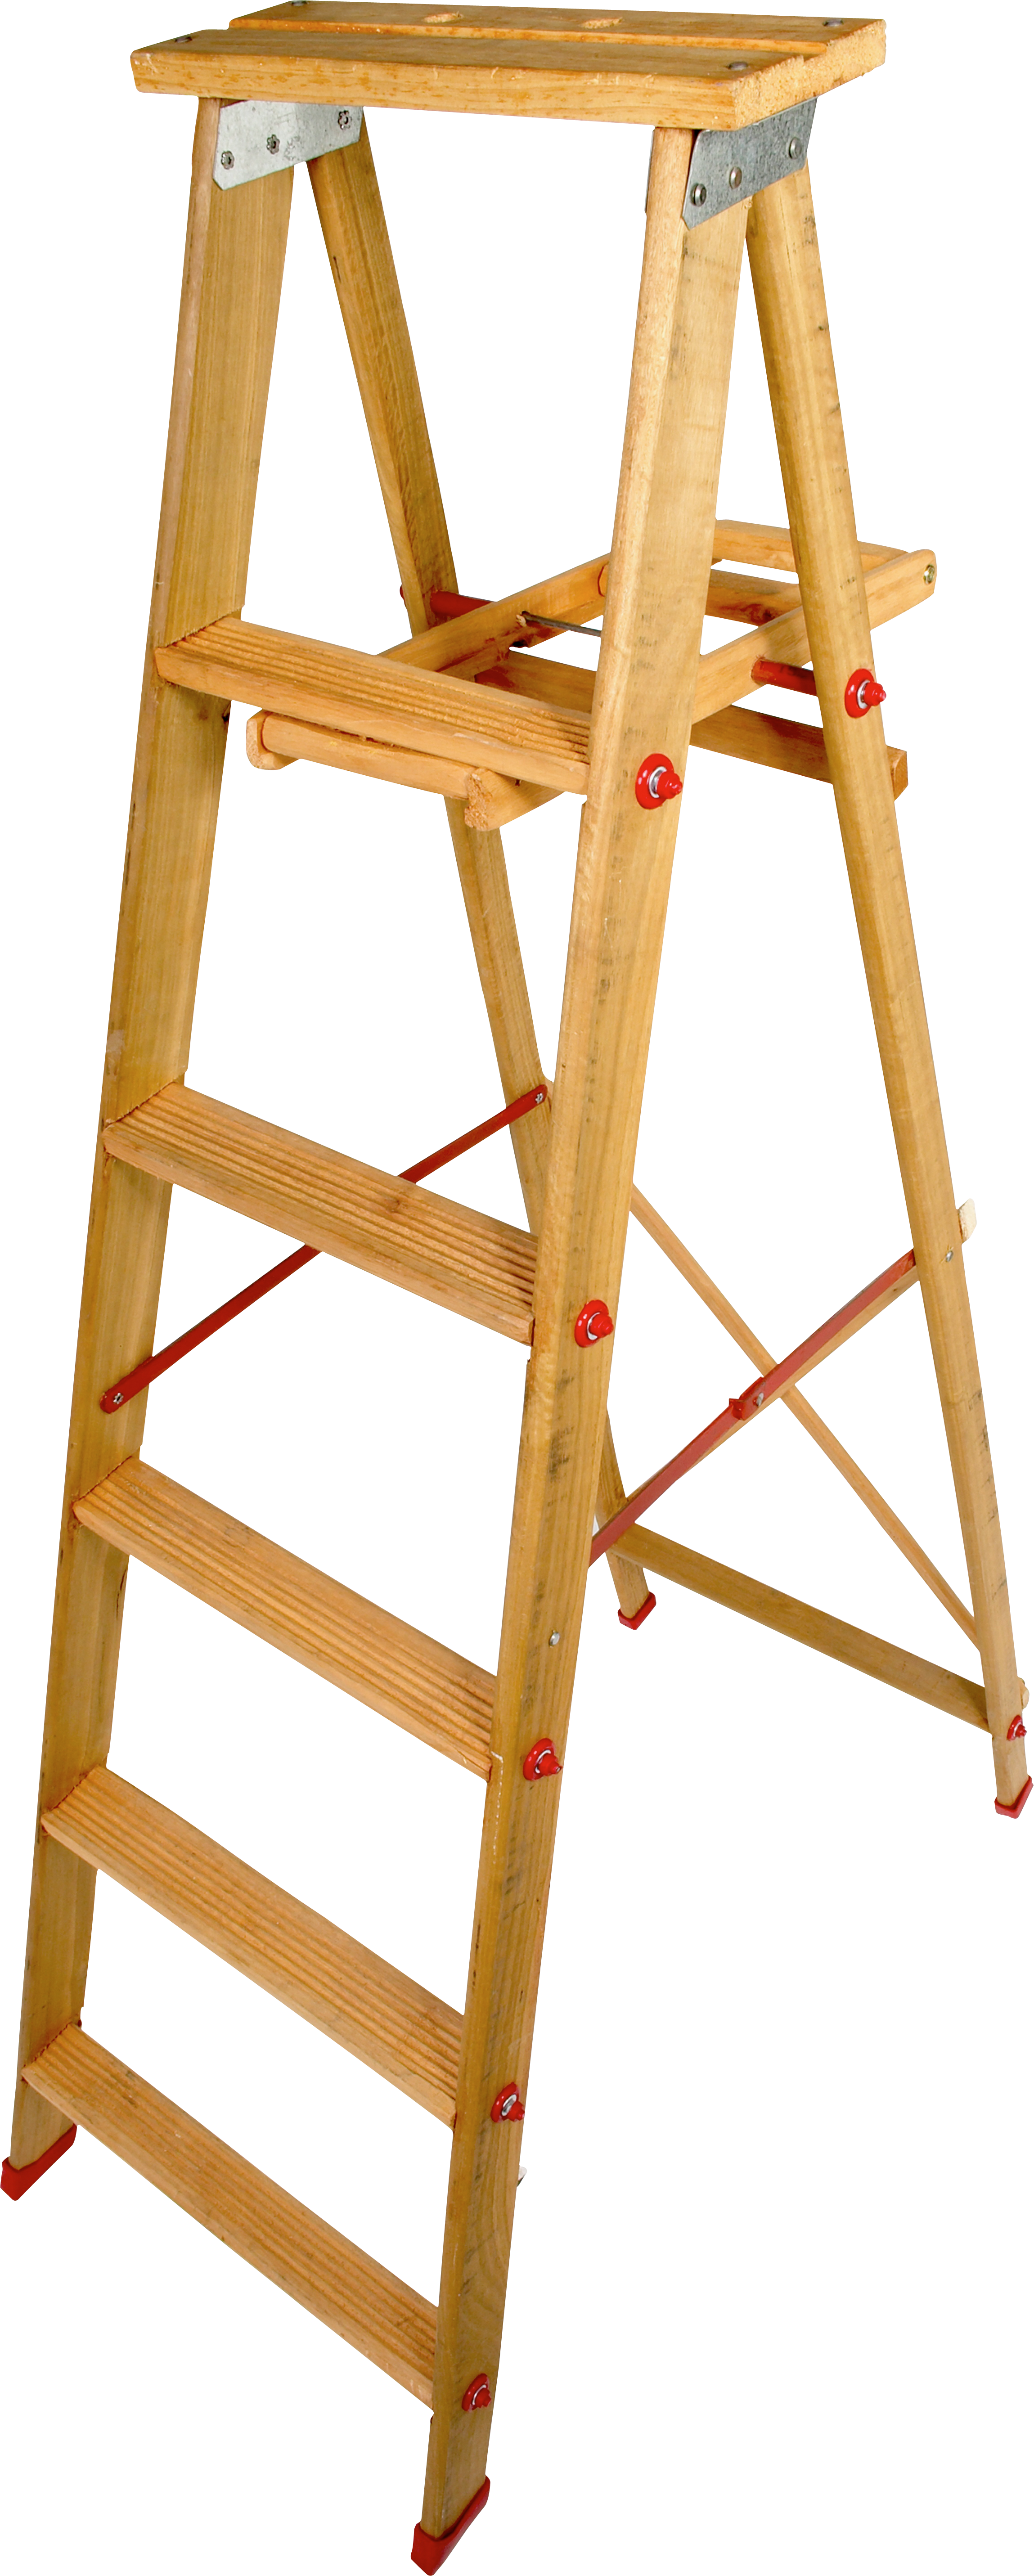 Wood Step Ladder Png - Step Ladder Transparent Background Clipart (2298x5725), Png Download